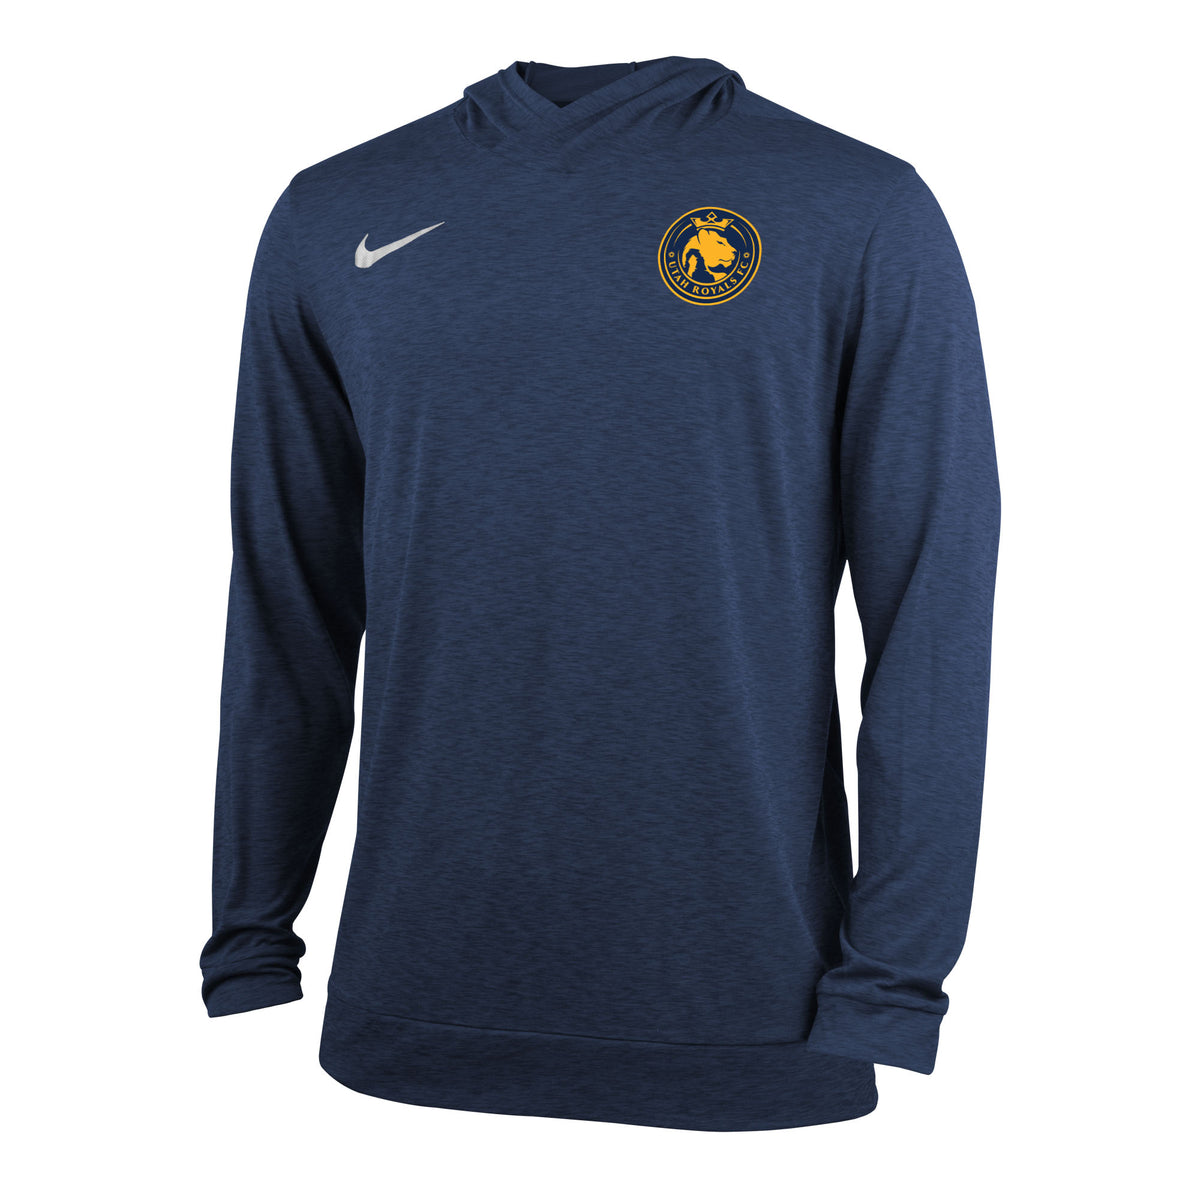 Utah Royals FC Nike Mens Navy/Gold Dry Top Hooded Long Sleeve